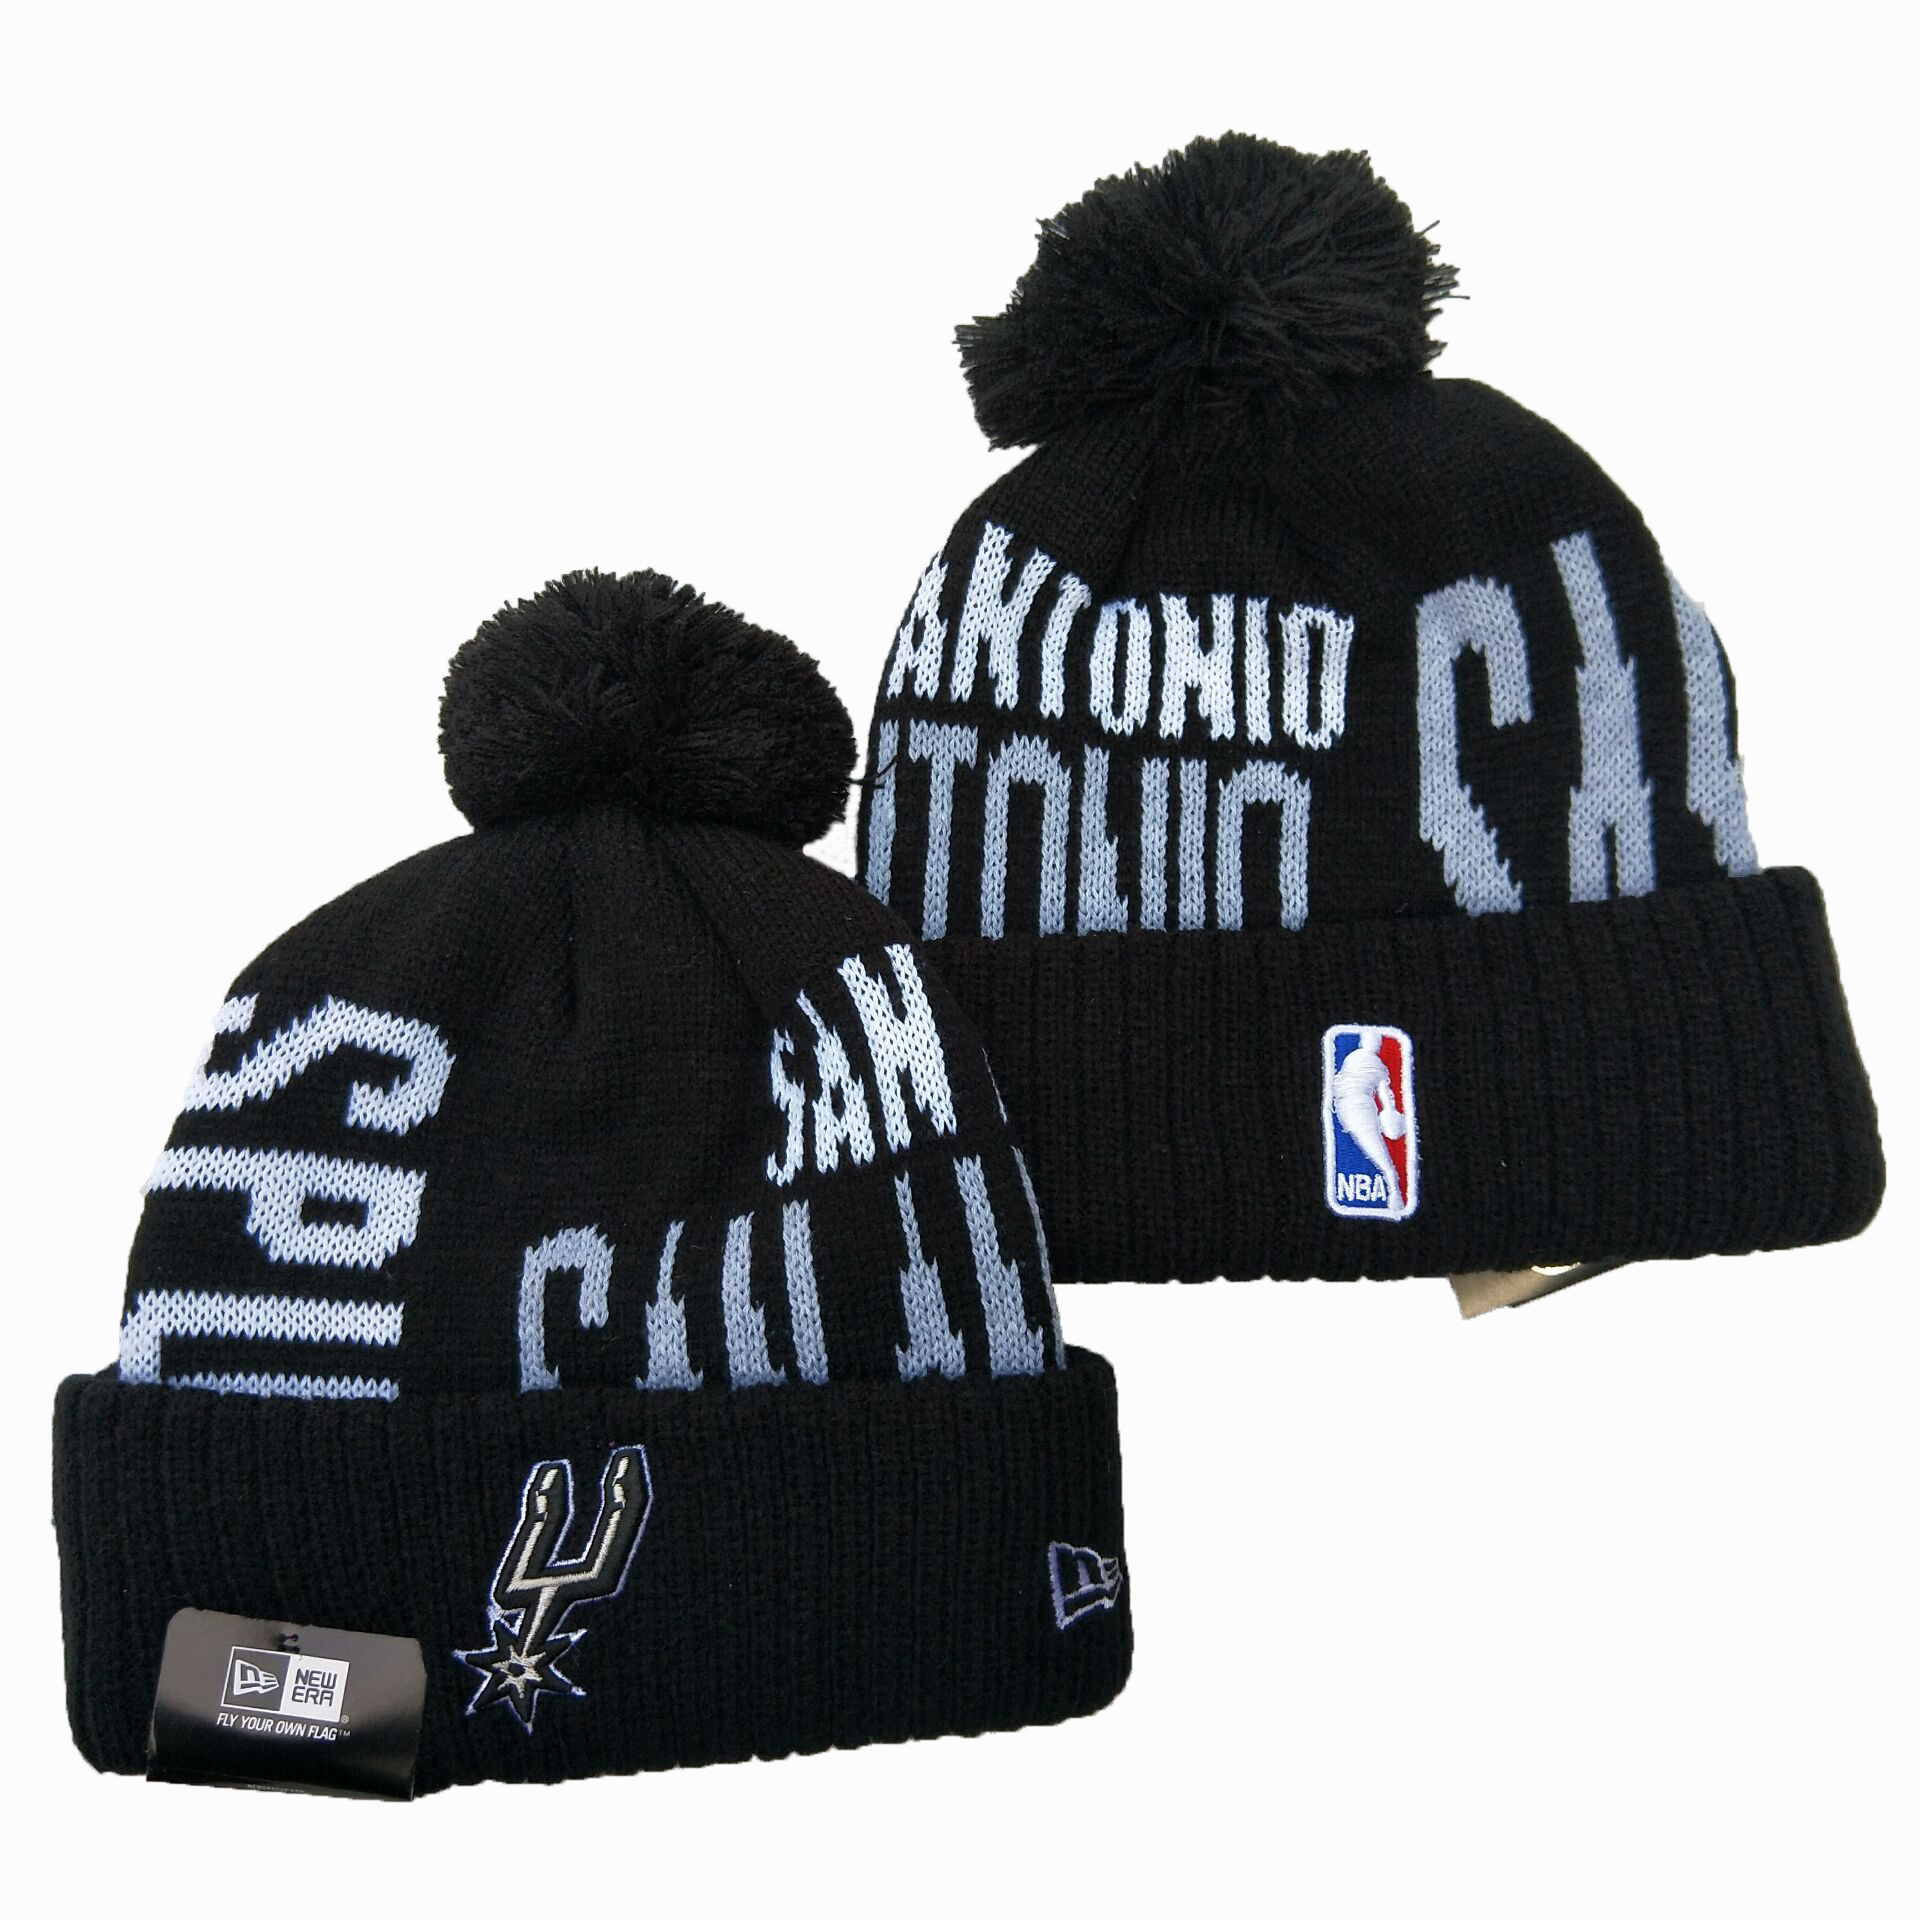 Spurs Team Logo Black Pom Knit Hat YD